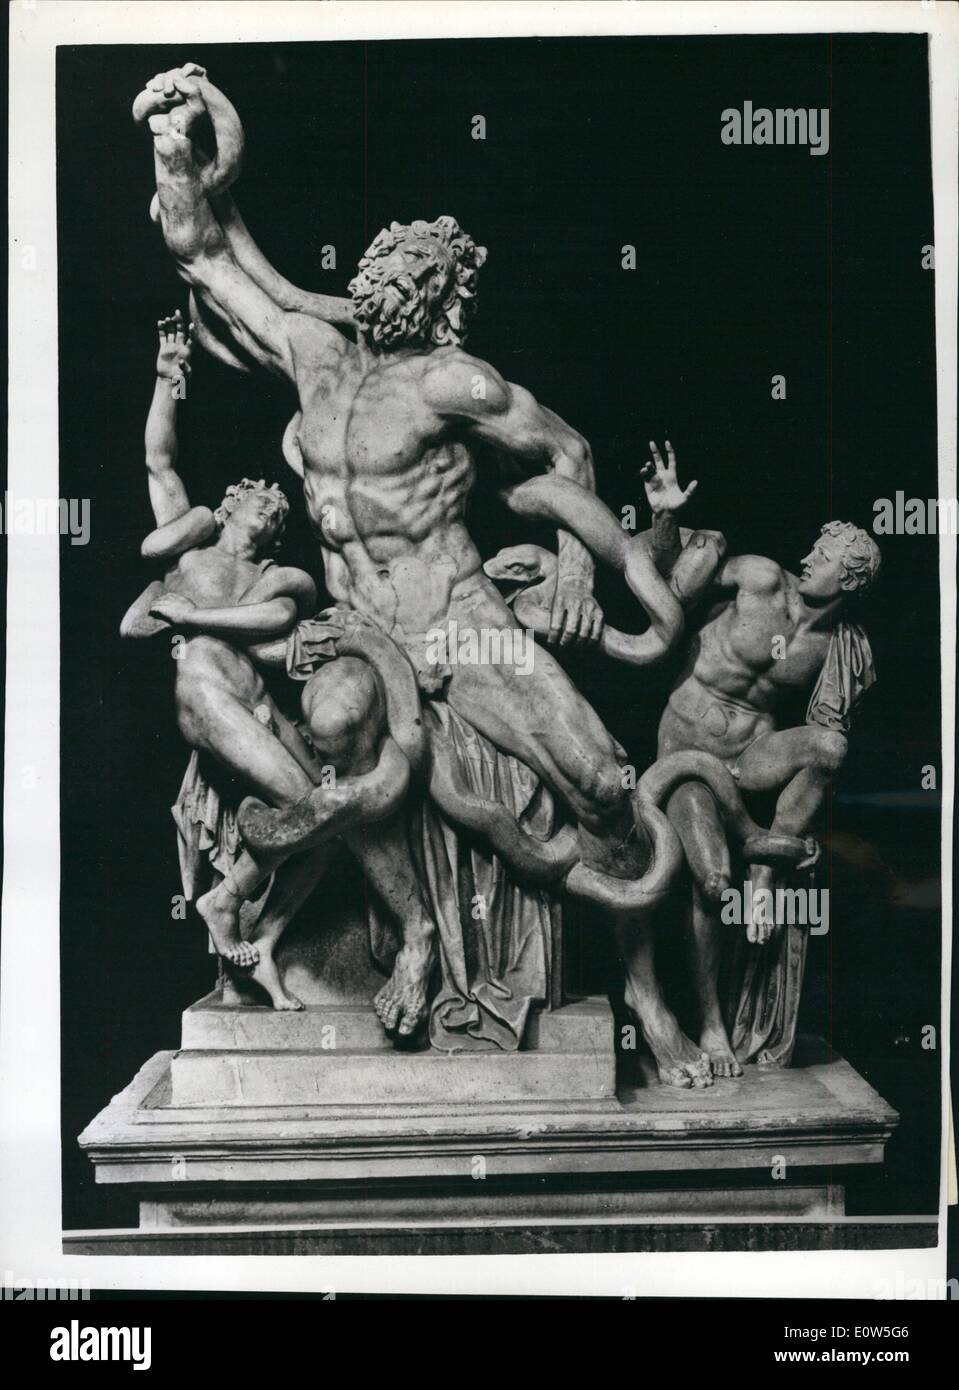 7. Juli 1961 - die Aufgabe, die Dauted Michelangelo - Sanierung von der Laokoon - endlich fertig: die Idee, dass Michelancelo, ausgerechnet von einem Task haben sollte, die Scisppropriate zu seinem Gentus eingeschüchtert worden - Vollendung der beschädigten Laokoon - Schienen ist eine der Schlussfolgerungen, die aus der nächsten Prüfung je gemacht der berühmten Statue im Vatikan entstanden sind. Besucher der päpstlichen Galleria dieser Saison der Studie und Restaurierung Stockfoto